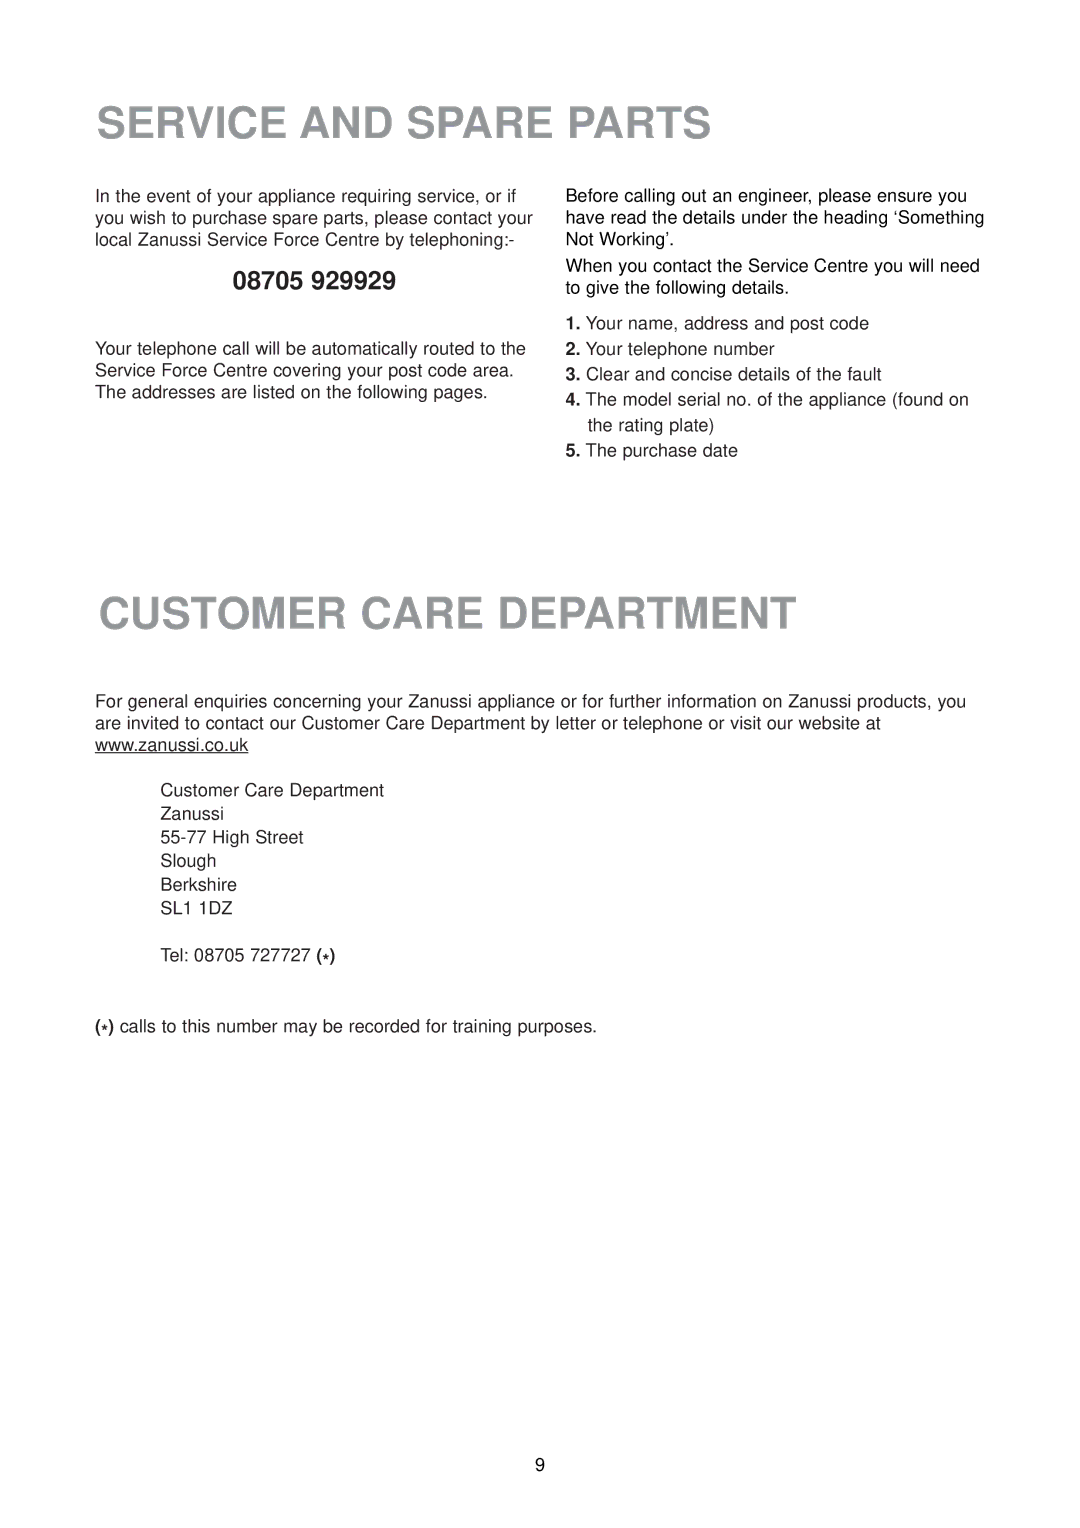 Zanussi ZU 9154 manual Service and Spare Parts, Customer Care Department, 08705 